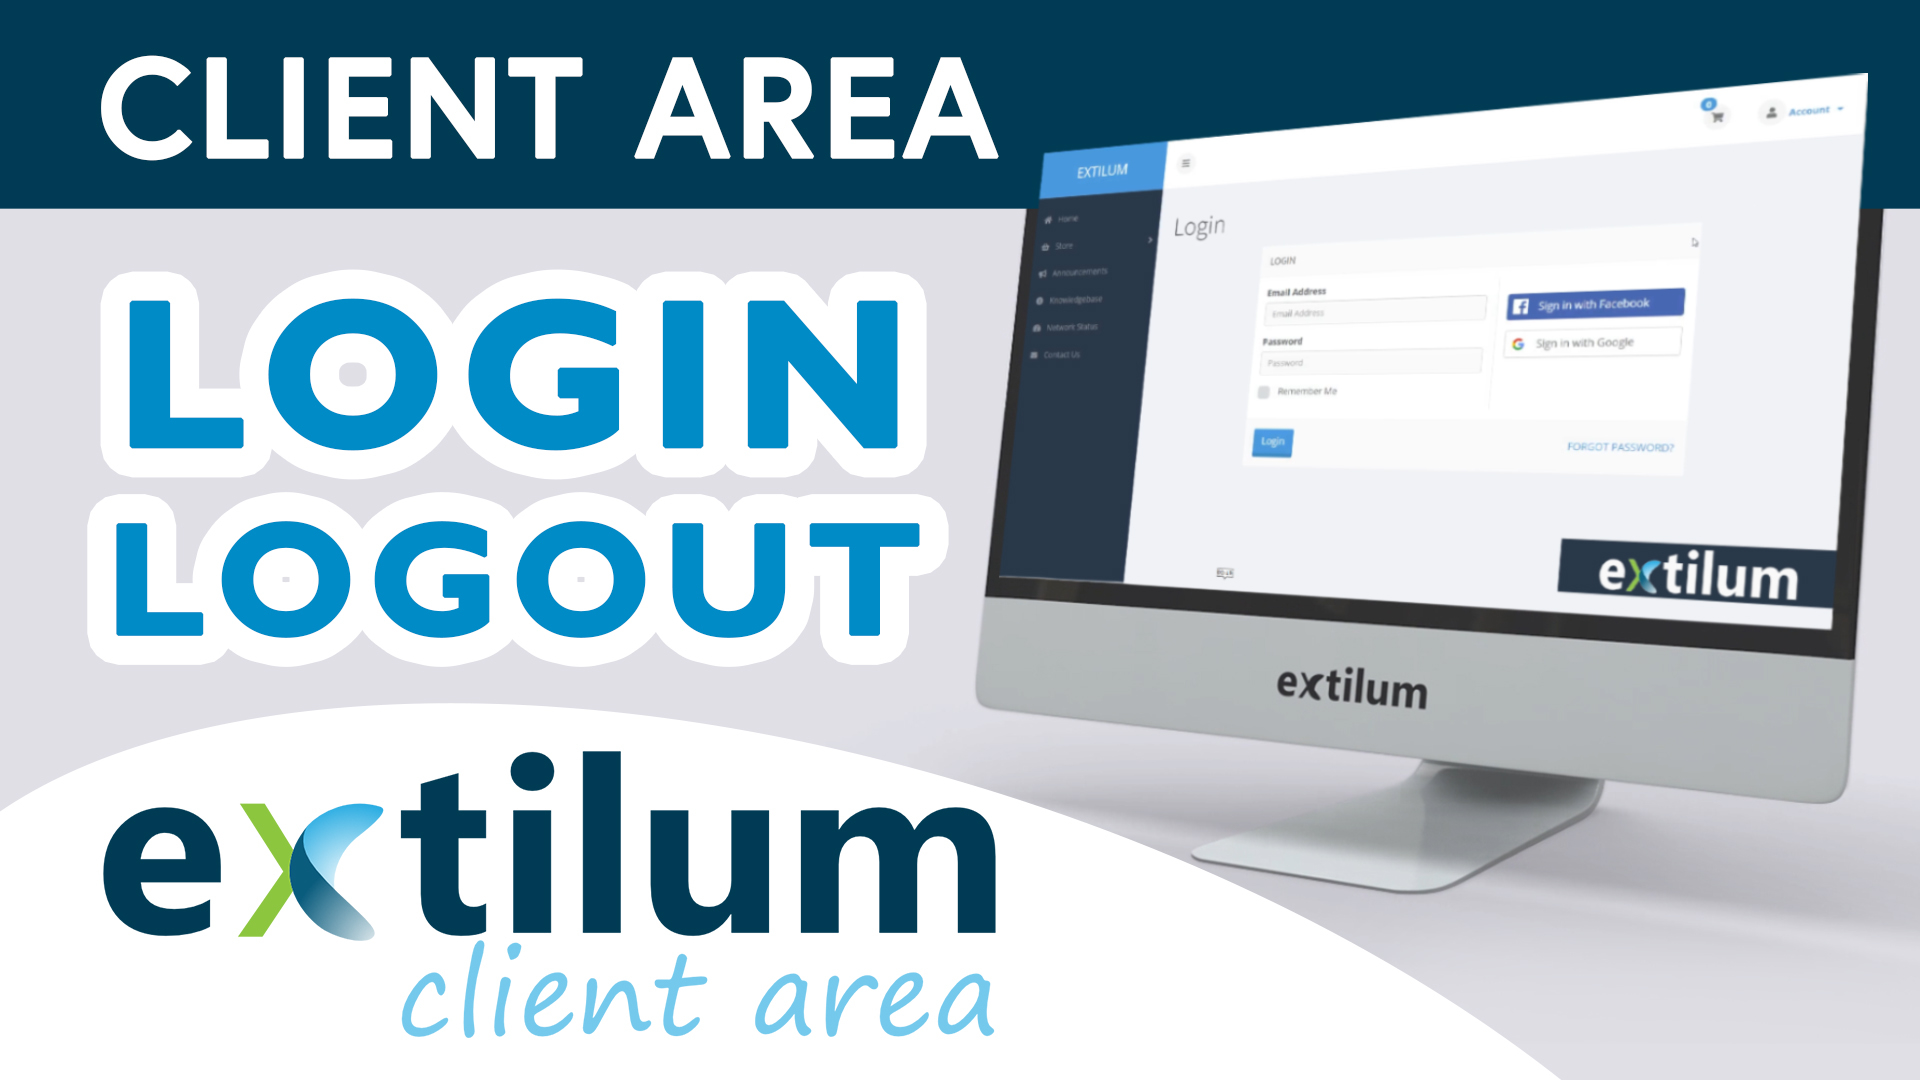 Extilum Client Area Login - logout